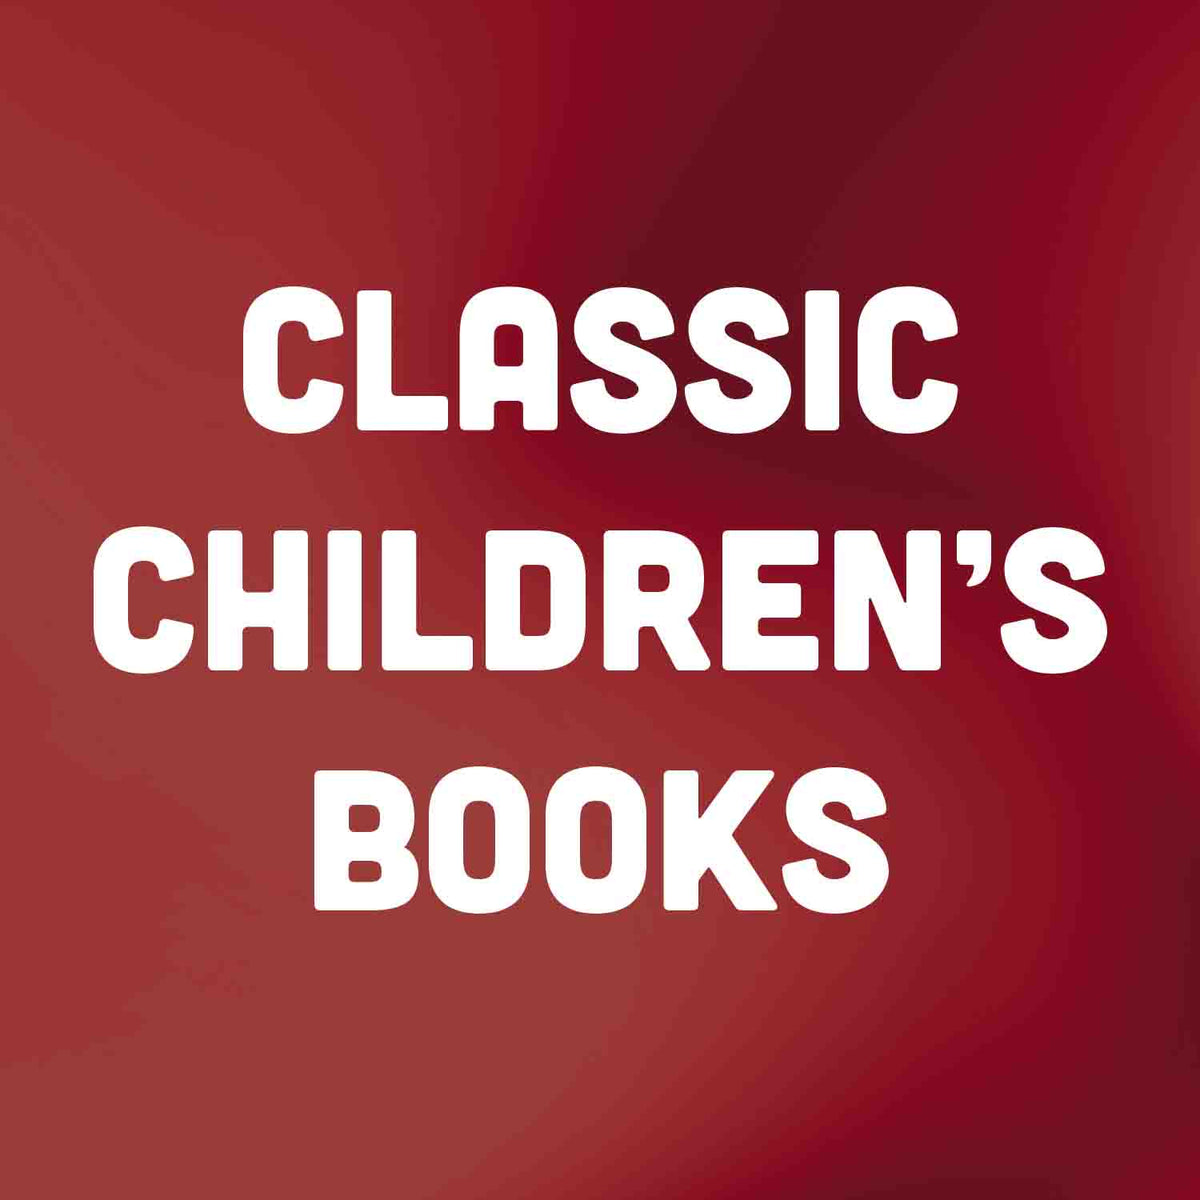 classic-children-s-books-books2door